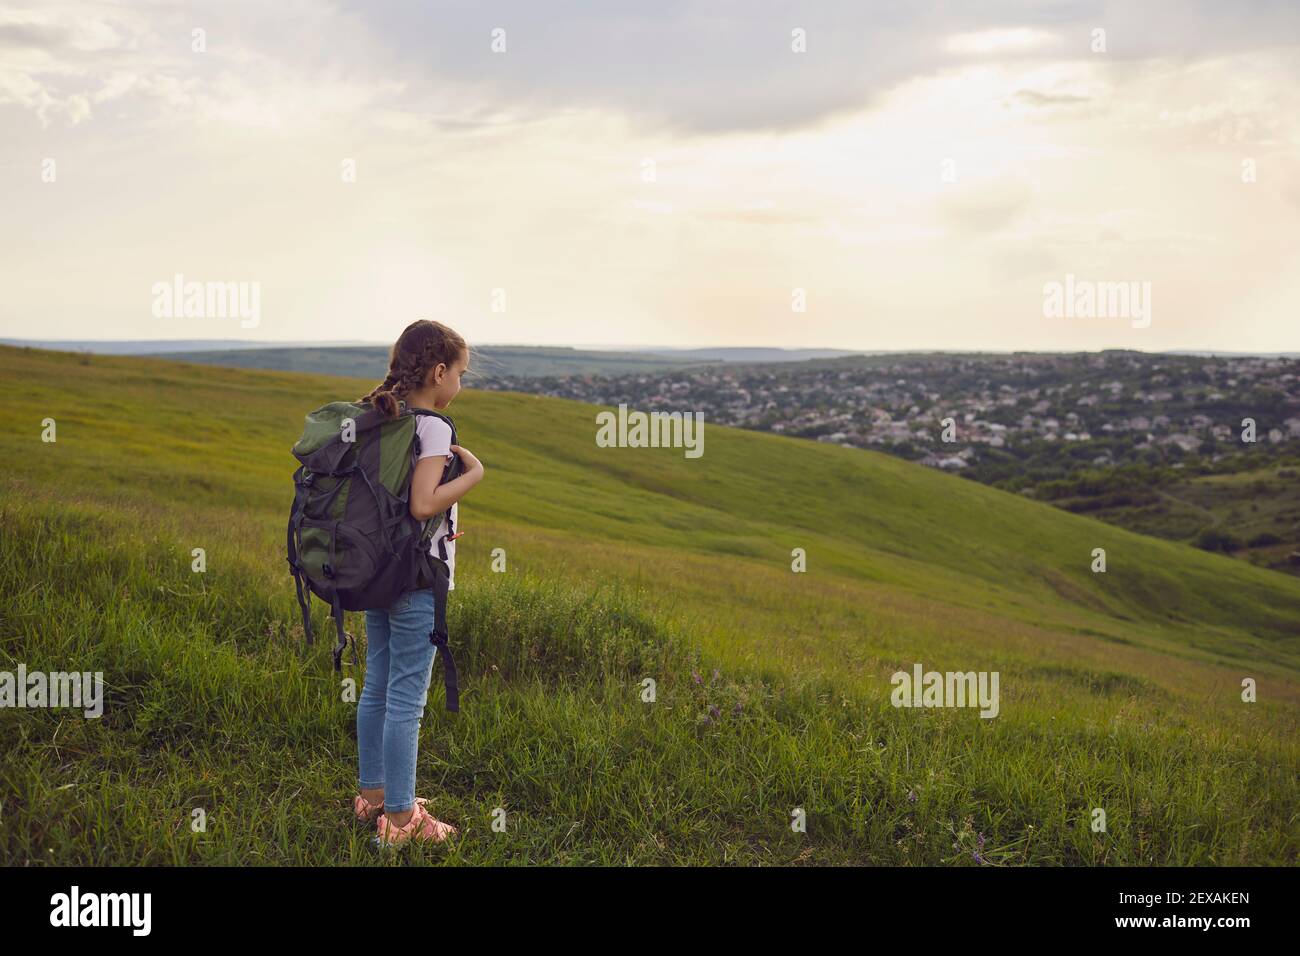 Une petite randonneur touristique avec des sacs à dos regarde le coucher de soleil sur une colline en été. Petite fille sur pied voyage aventure dans la nature Banque D'Images